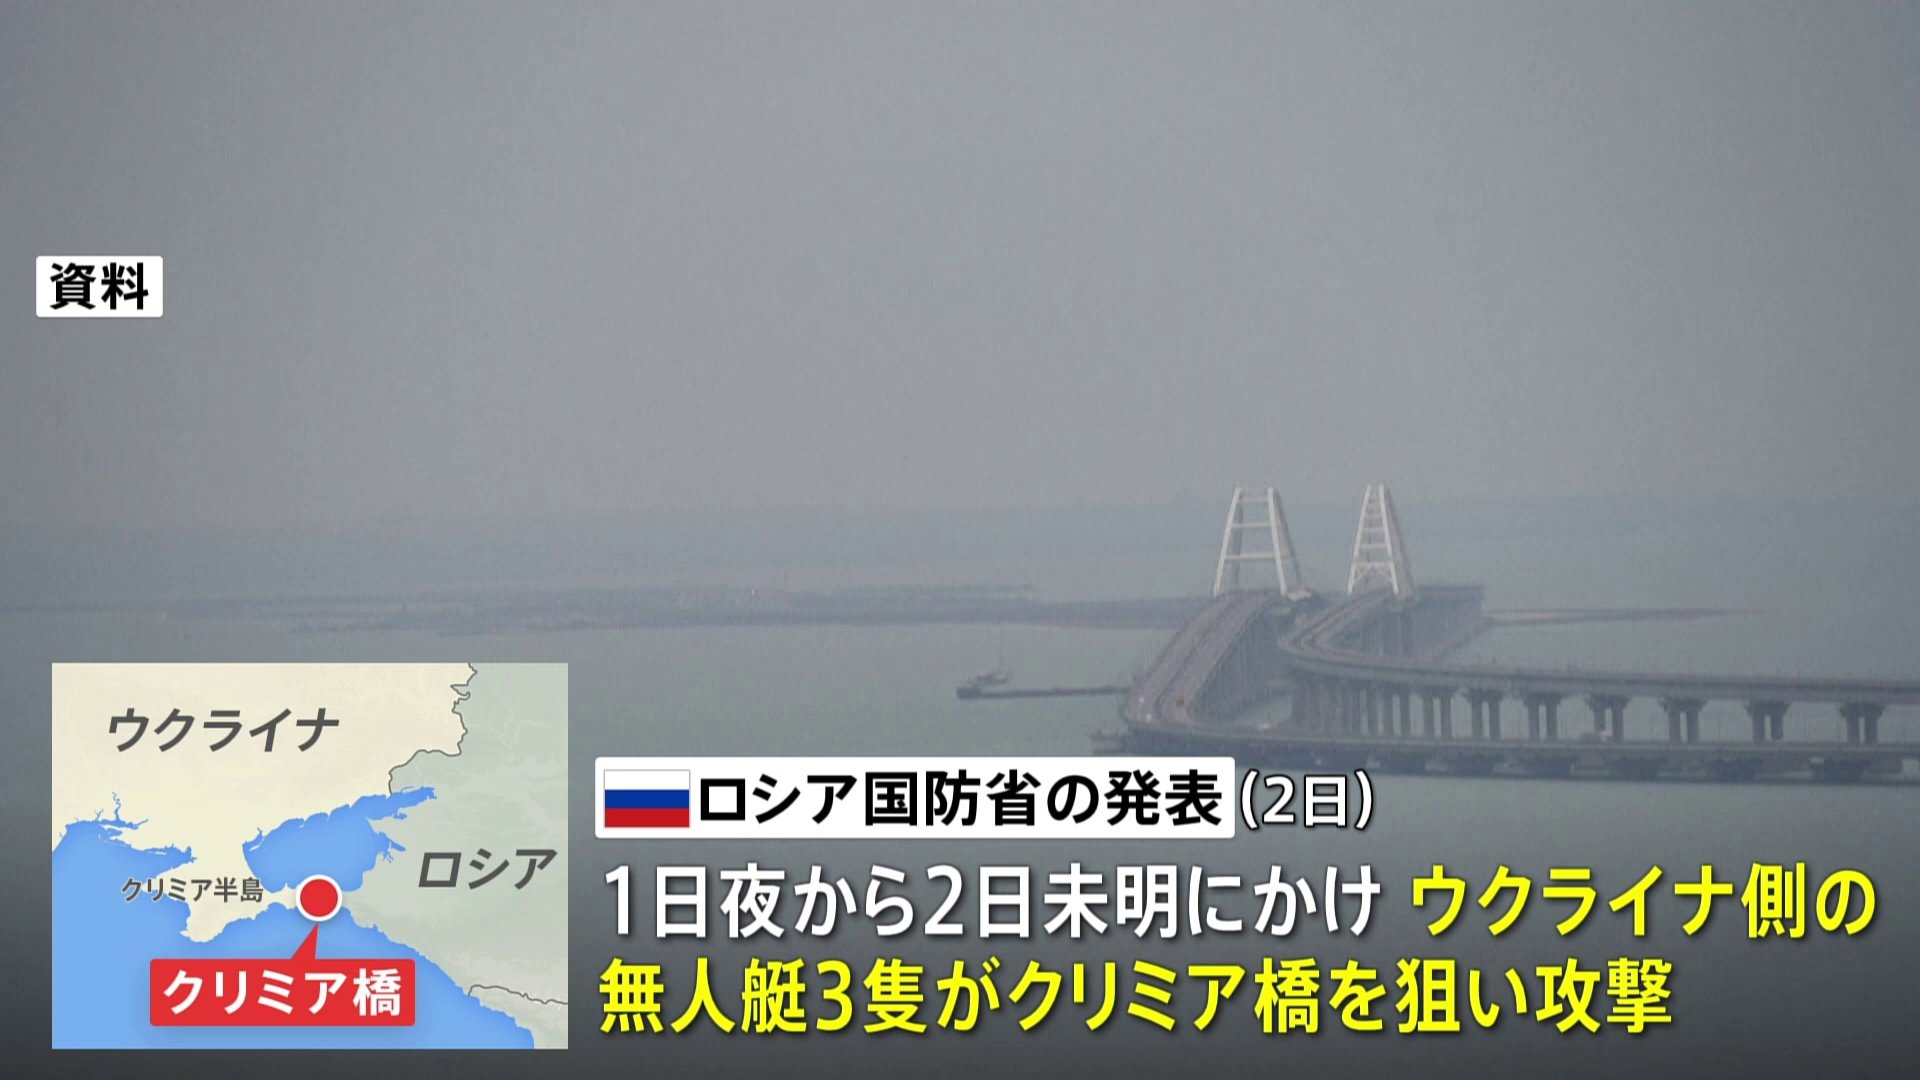 ロシア国防省、クリミア橋狙った「無人艇」攻撃仕掛けられ「すべて破壊」と発表